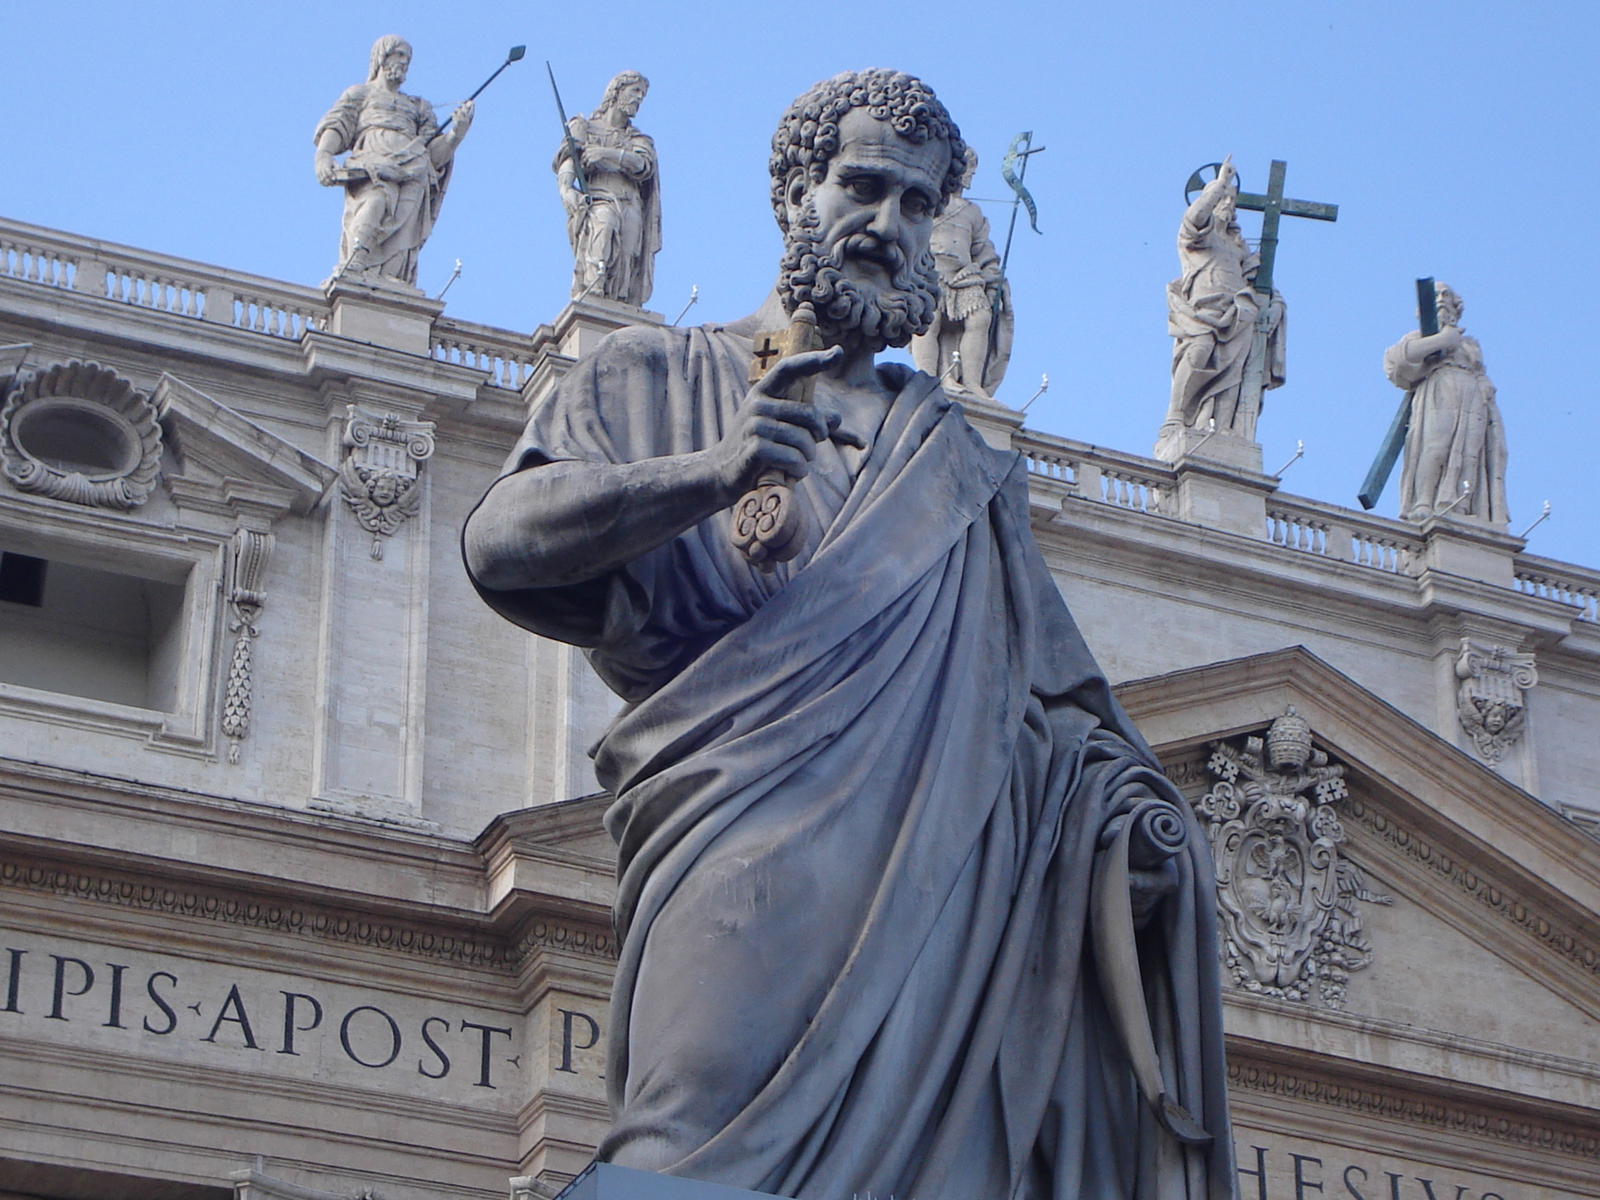 Vaticano sediará eventos sobre o legado de São Pedro